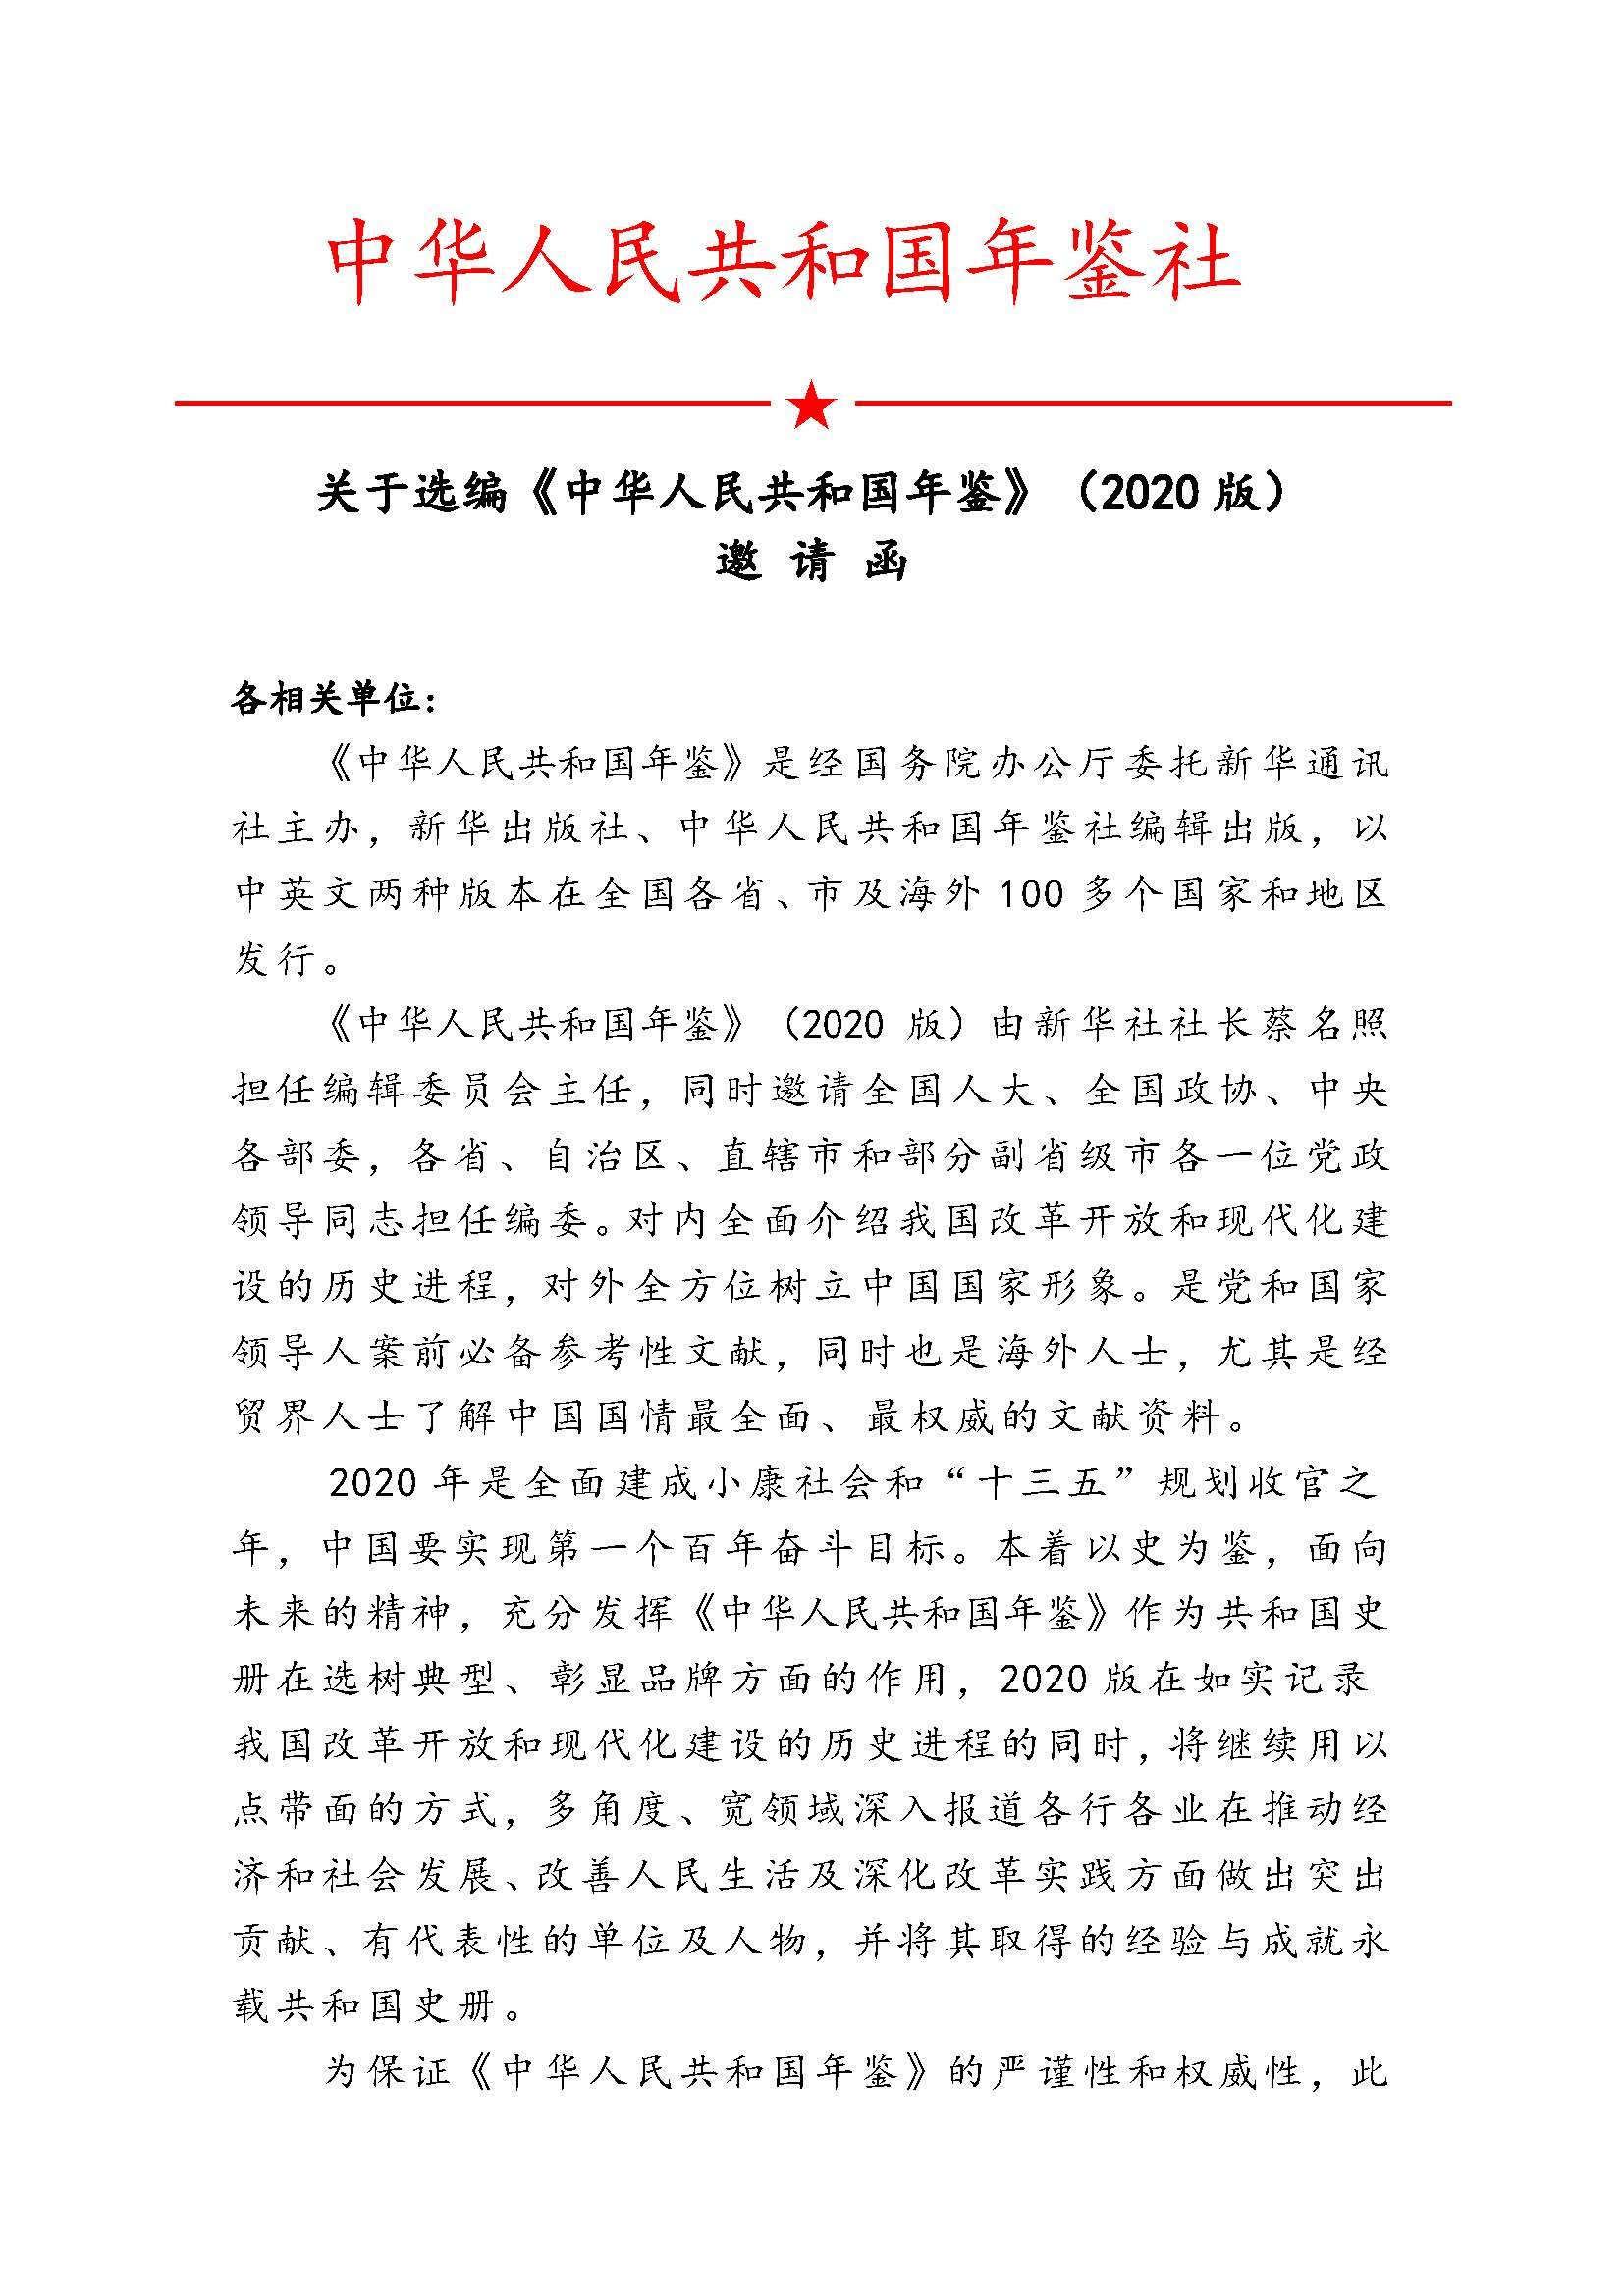 2020年《中华人民共和国年鉴》入编邀请函